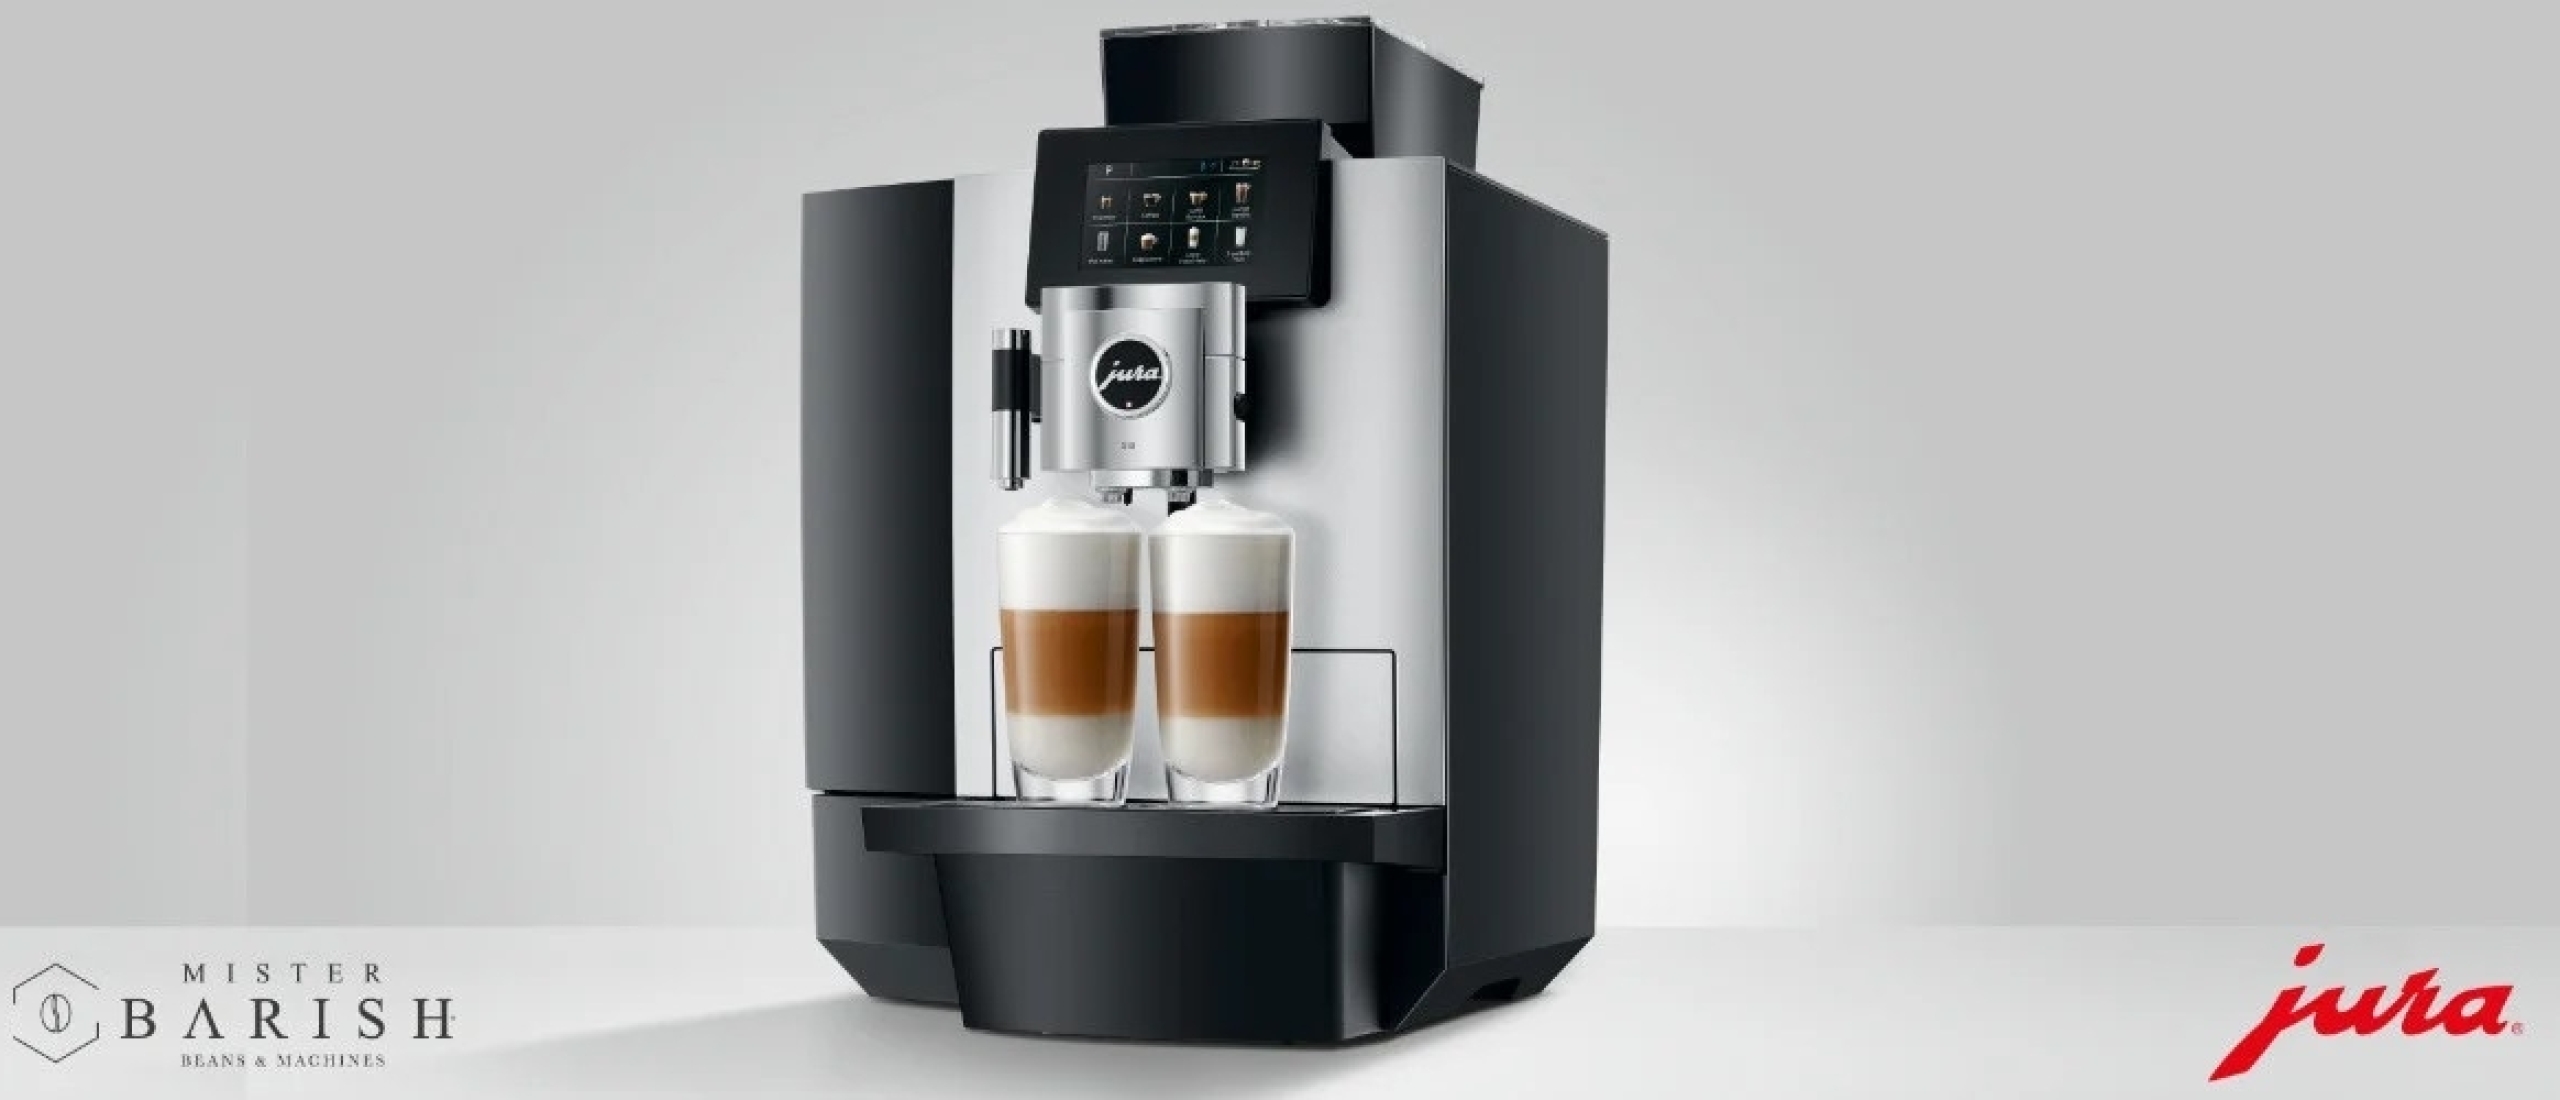 La Jura X10 est une bête de somme professionnelle offrant un café délicieux